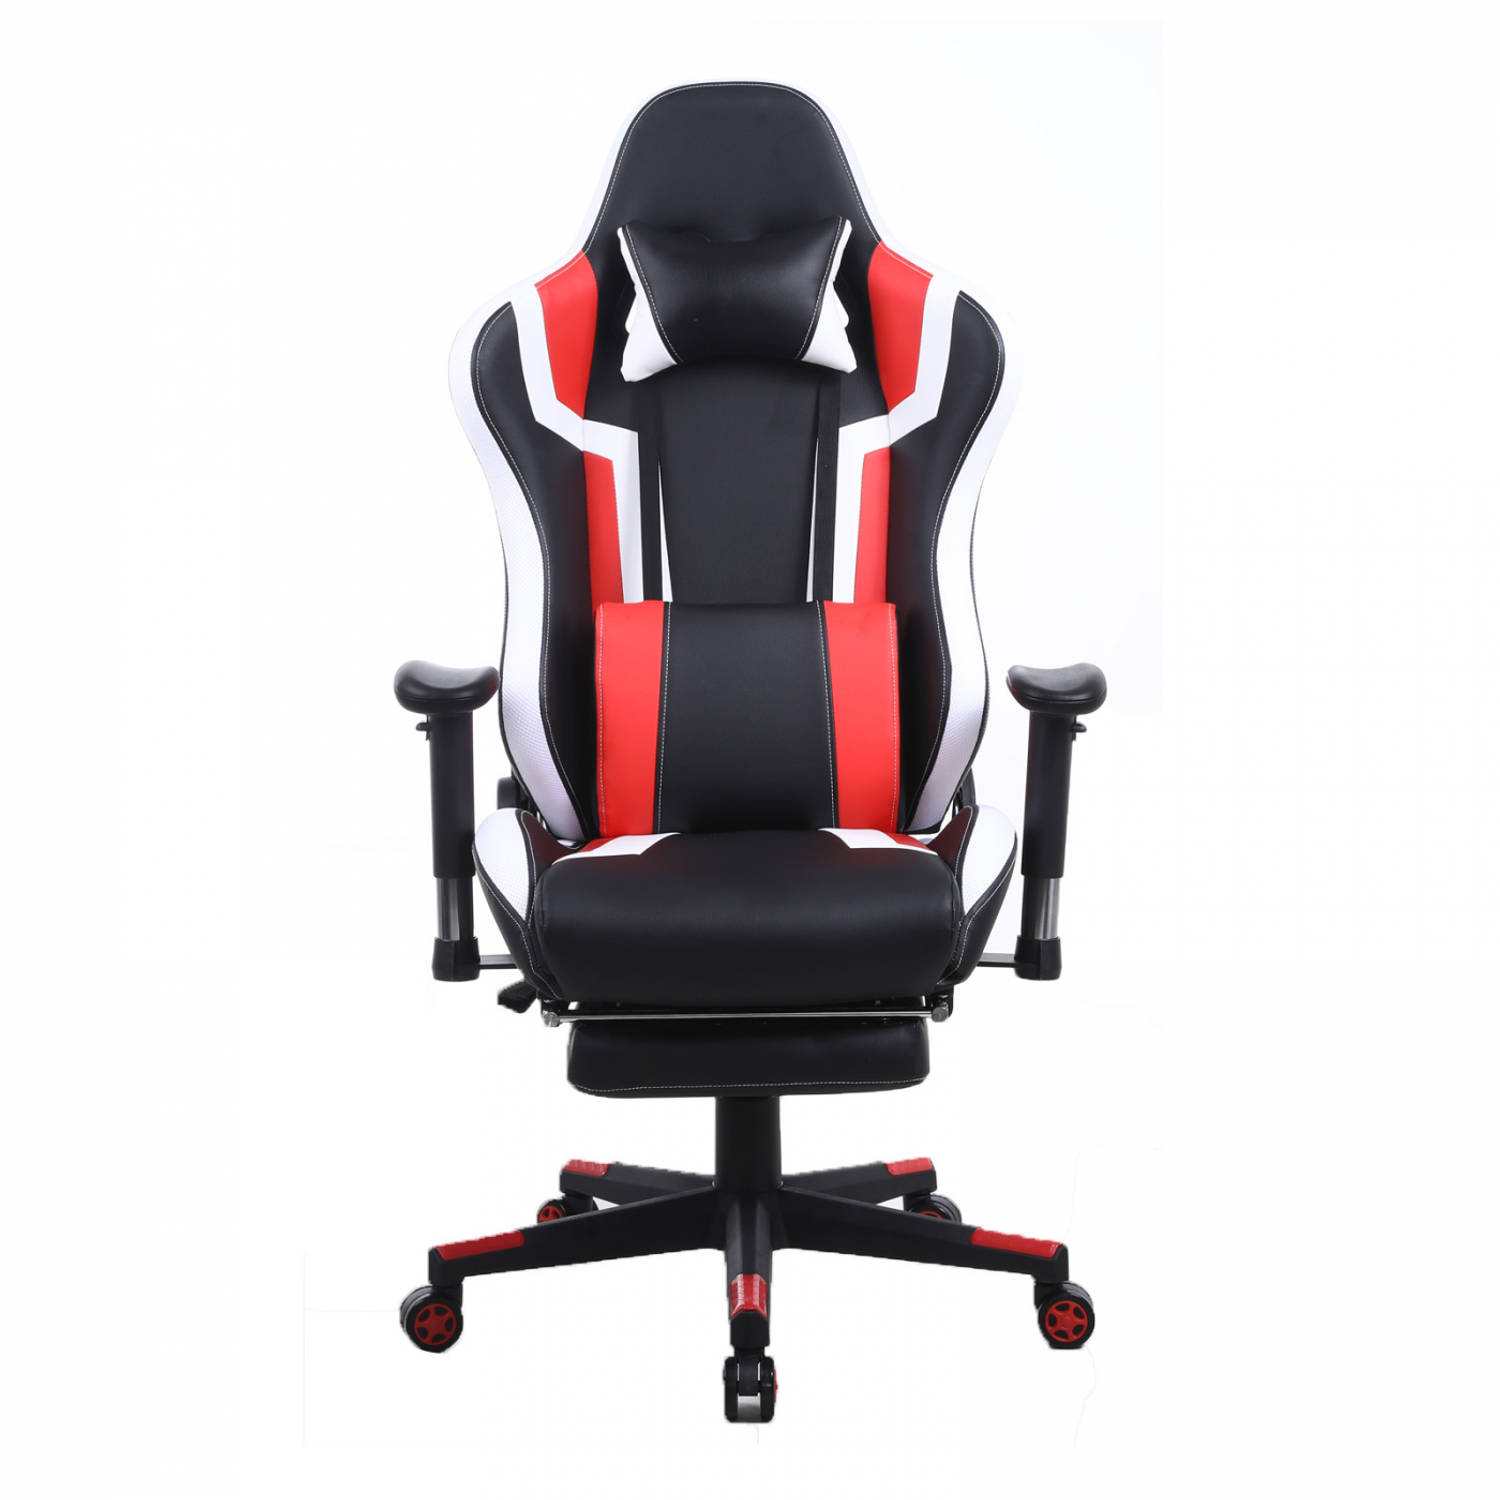 Gamestoel Tornado Relax Bureaustoel - met voetsteun - ergonomisch verstelbaar - rood zwart